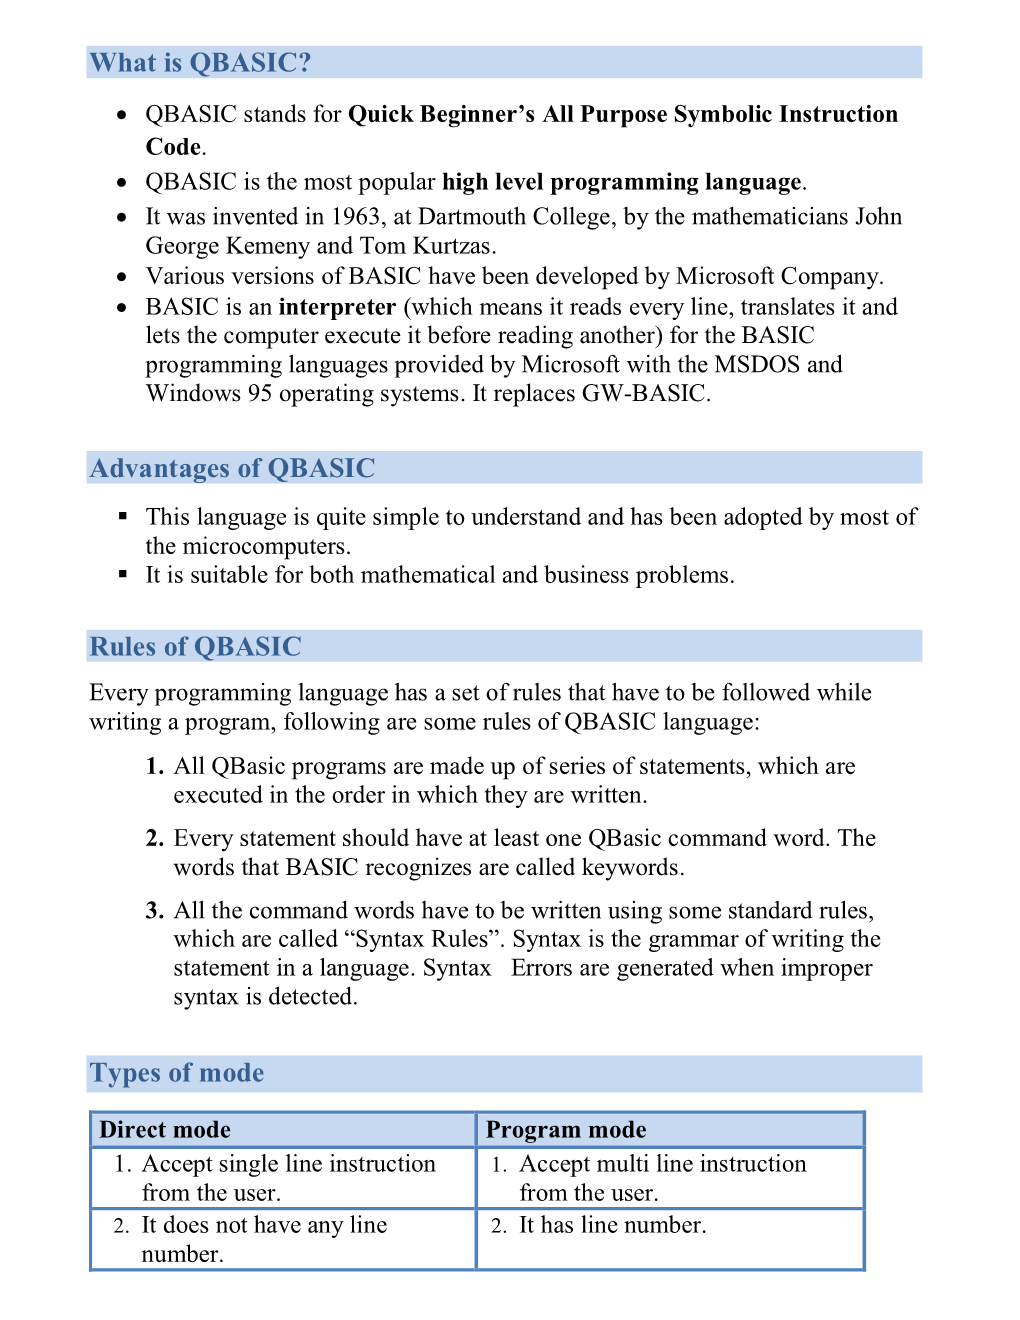 Advantages of QBASIC